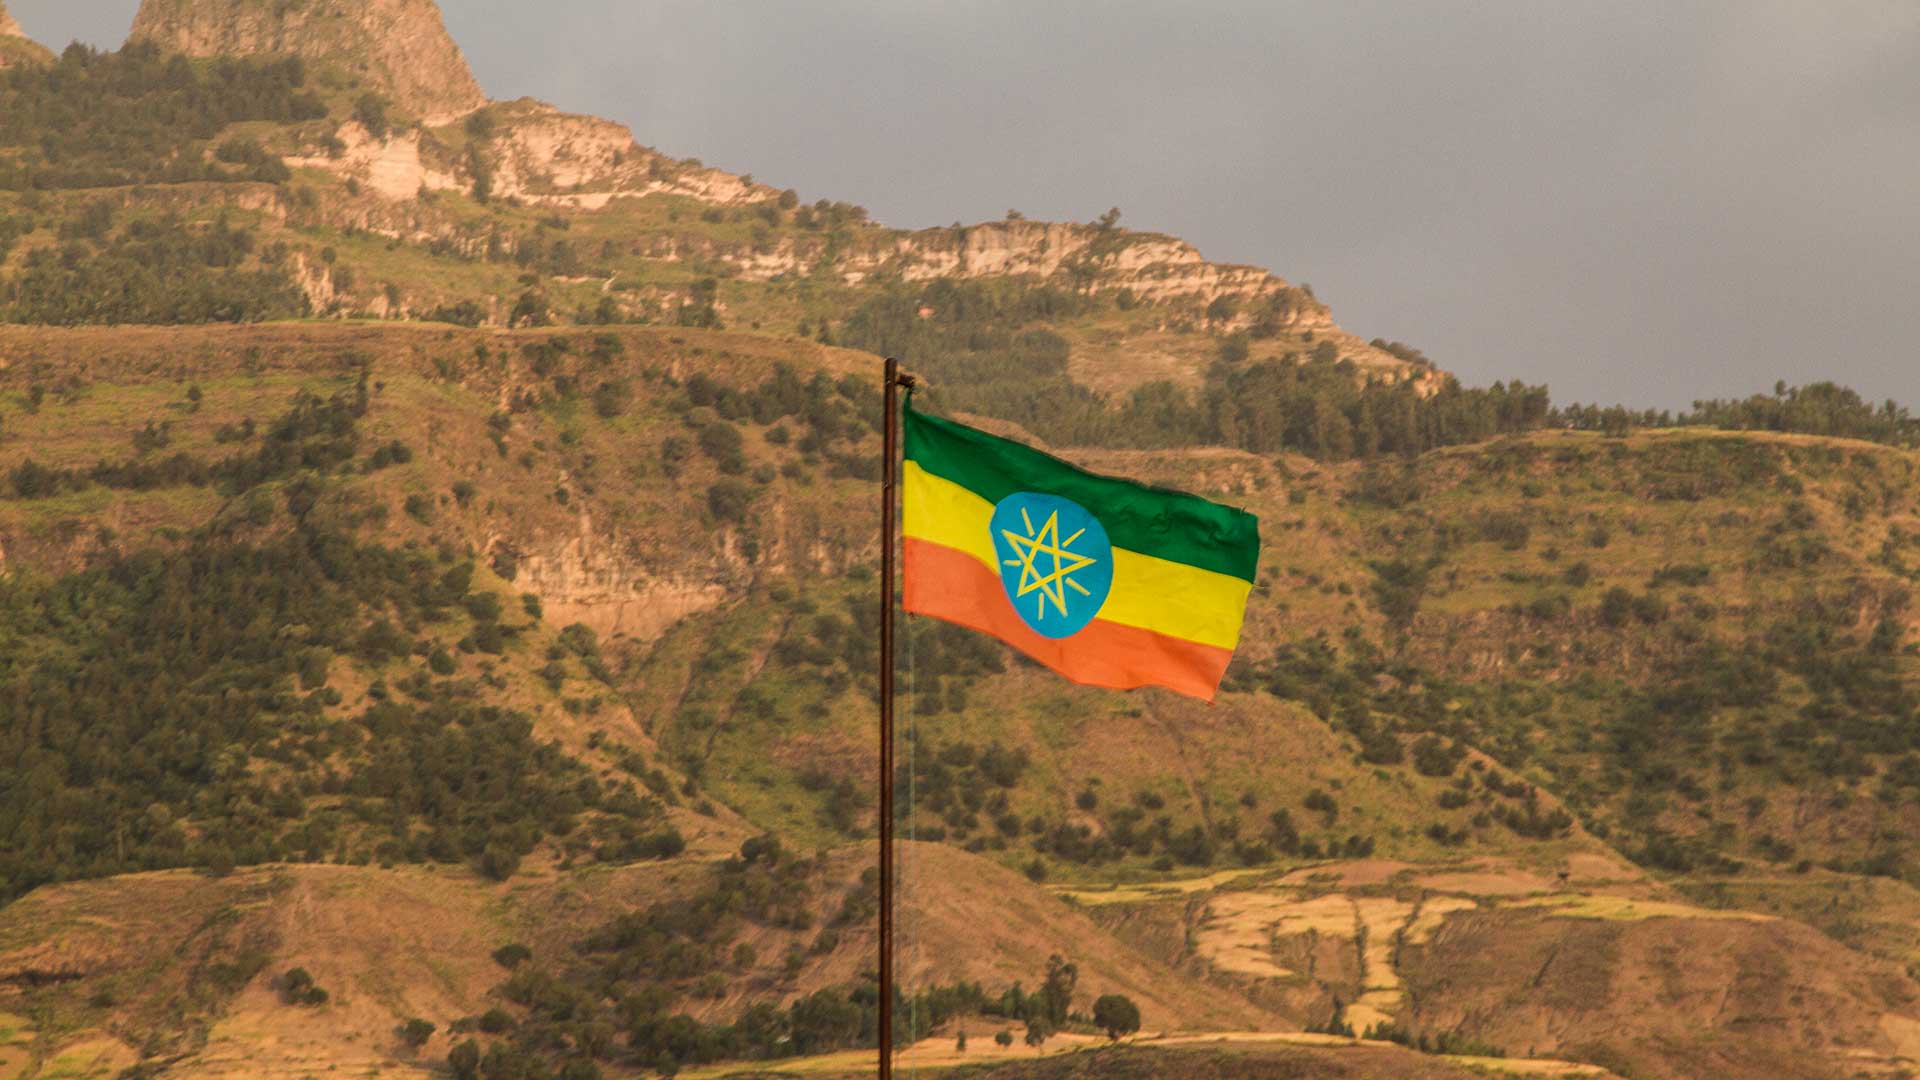 Por Que Pra Lá? - Etiópia - Sundaycooks